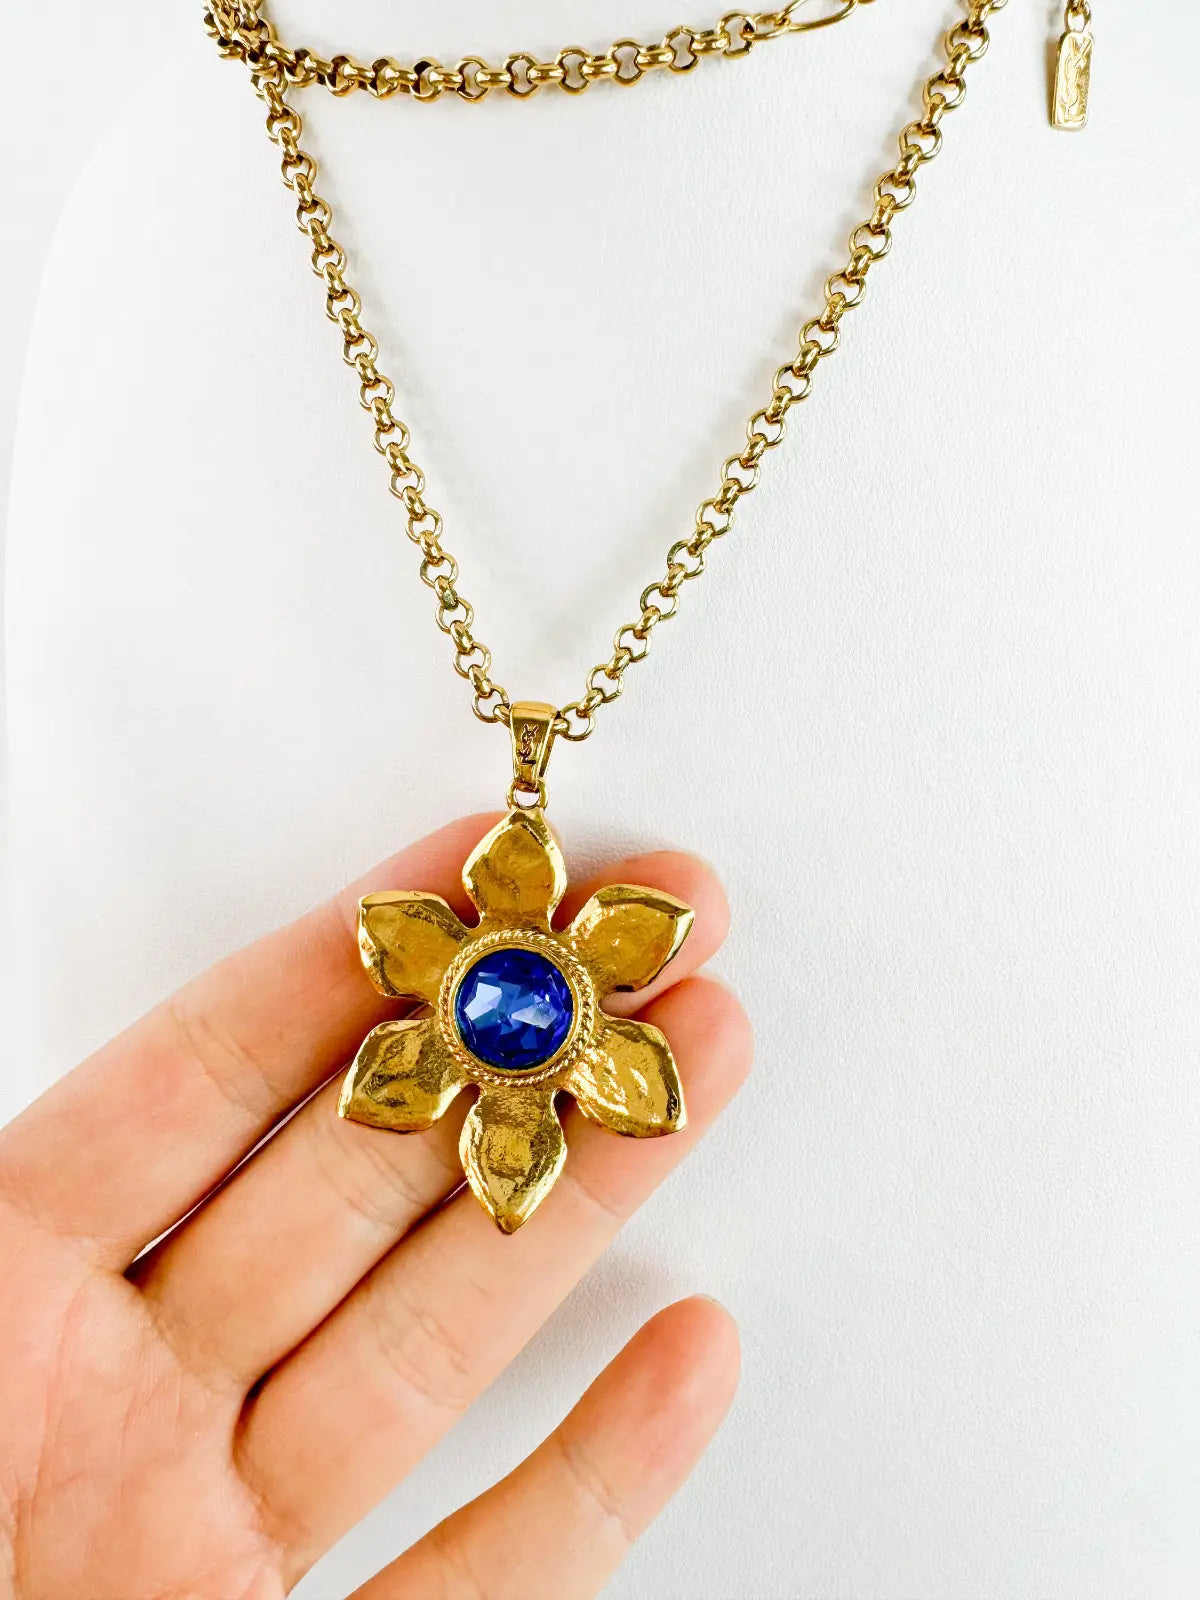 YSL Necklace, Yves Saint Laurent Vintage Necklace, Gold Tone Flower necklace, Sapphire necklace Floral Pendant Glass Opera Necklace Vintage